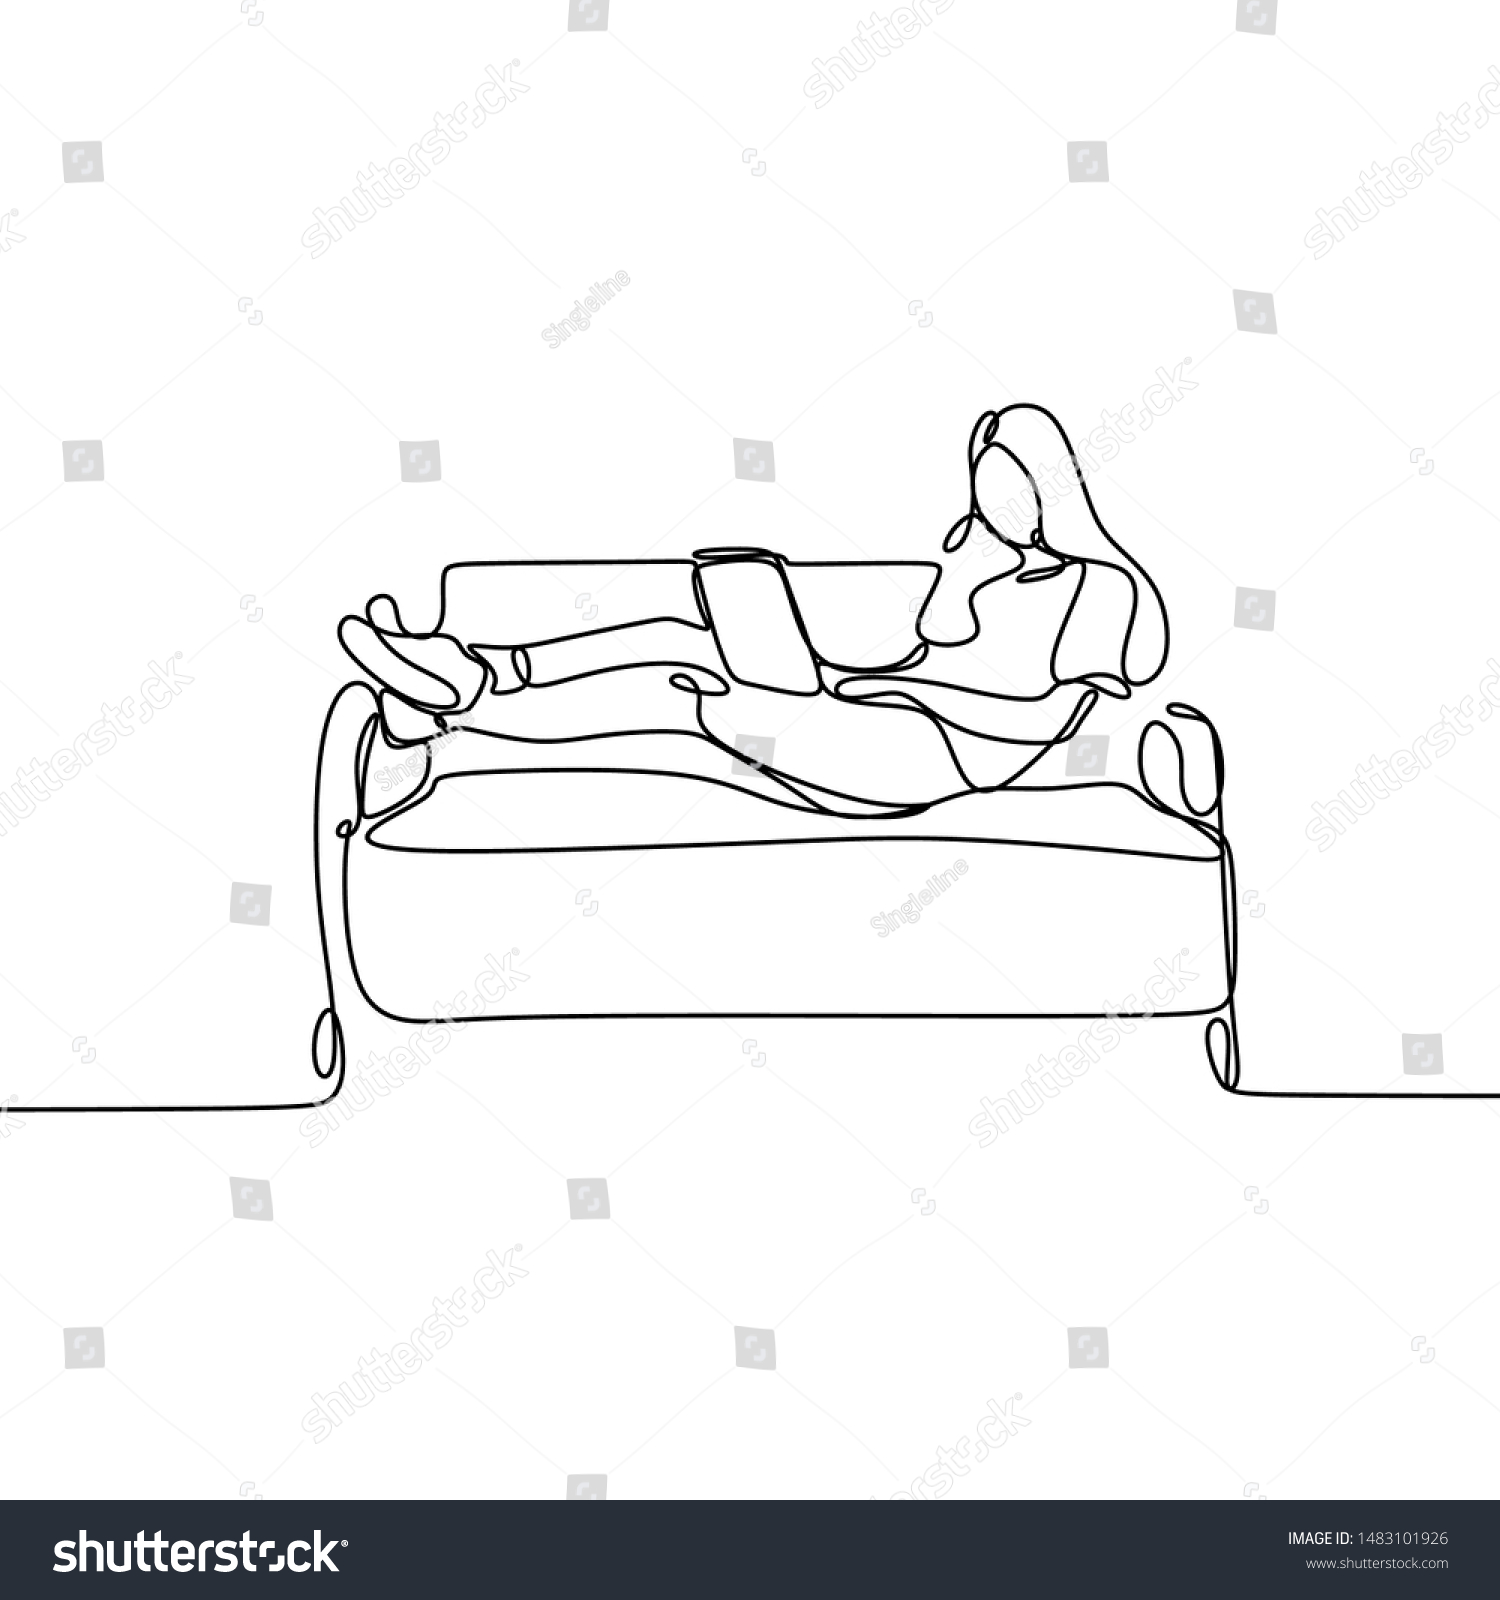 Рисованный человек лежачий на диване